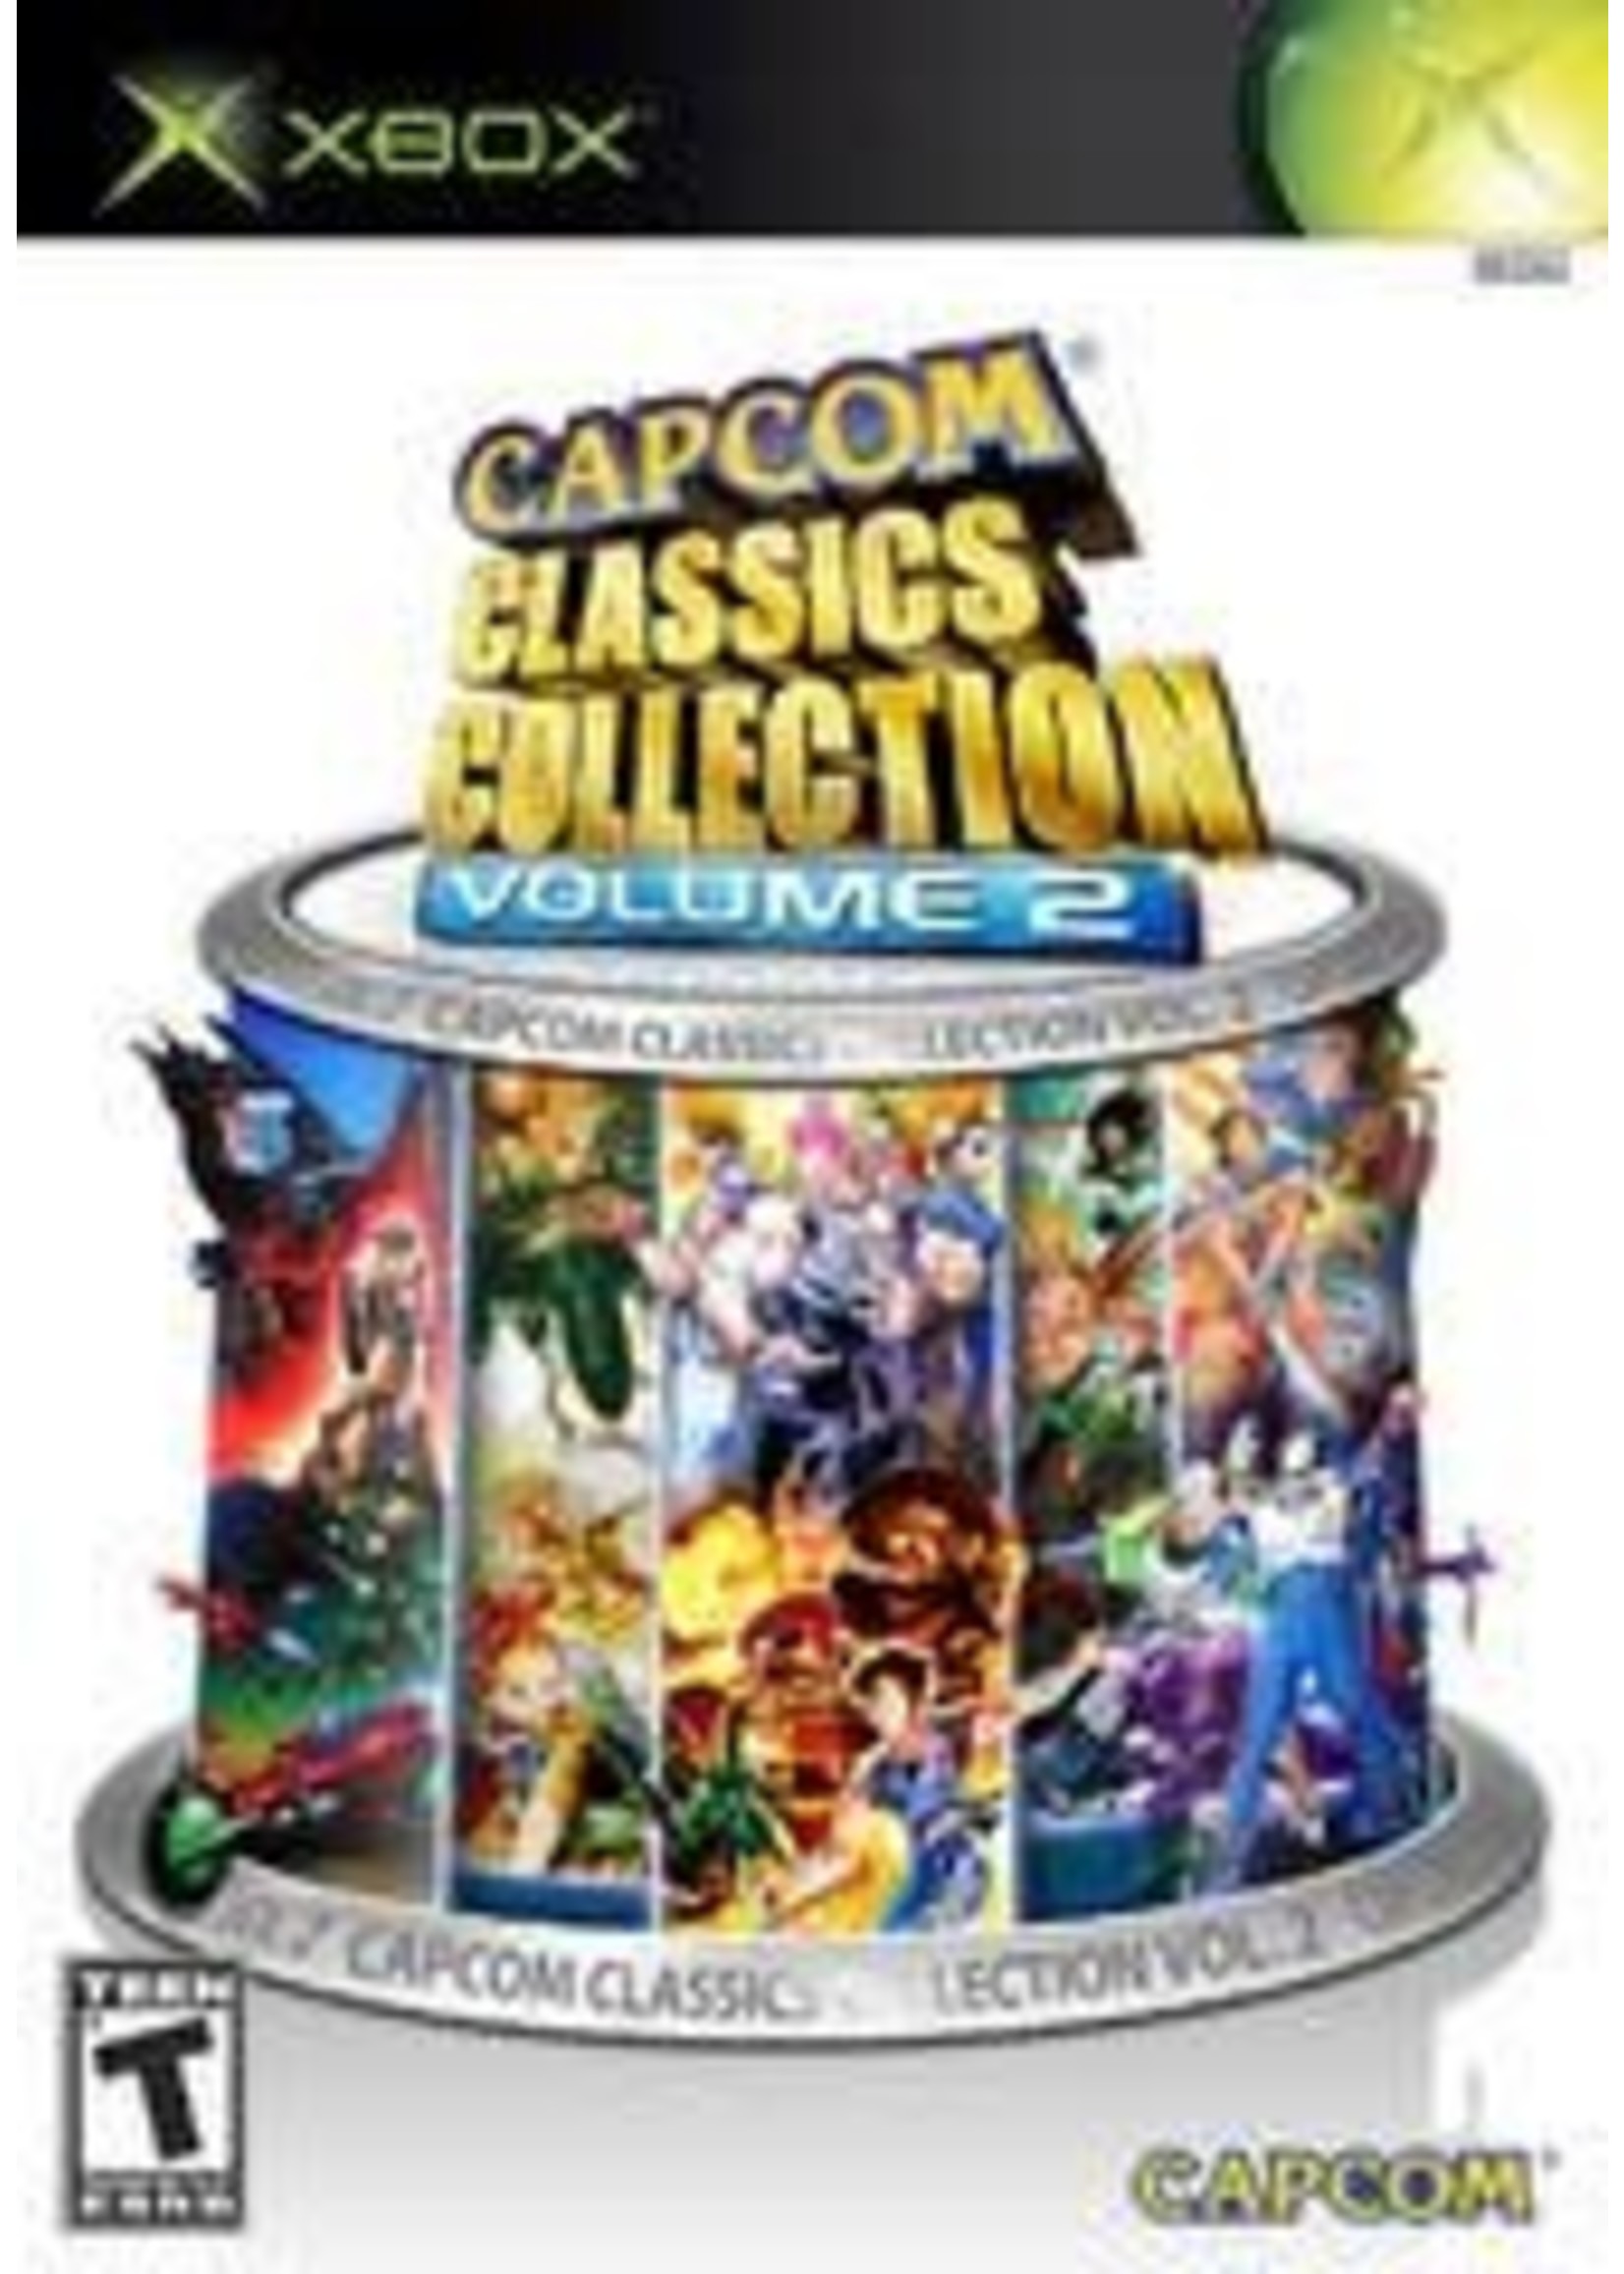 Capcom Classics Collection Volume 2 Xbox (CIB)